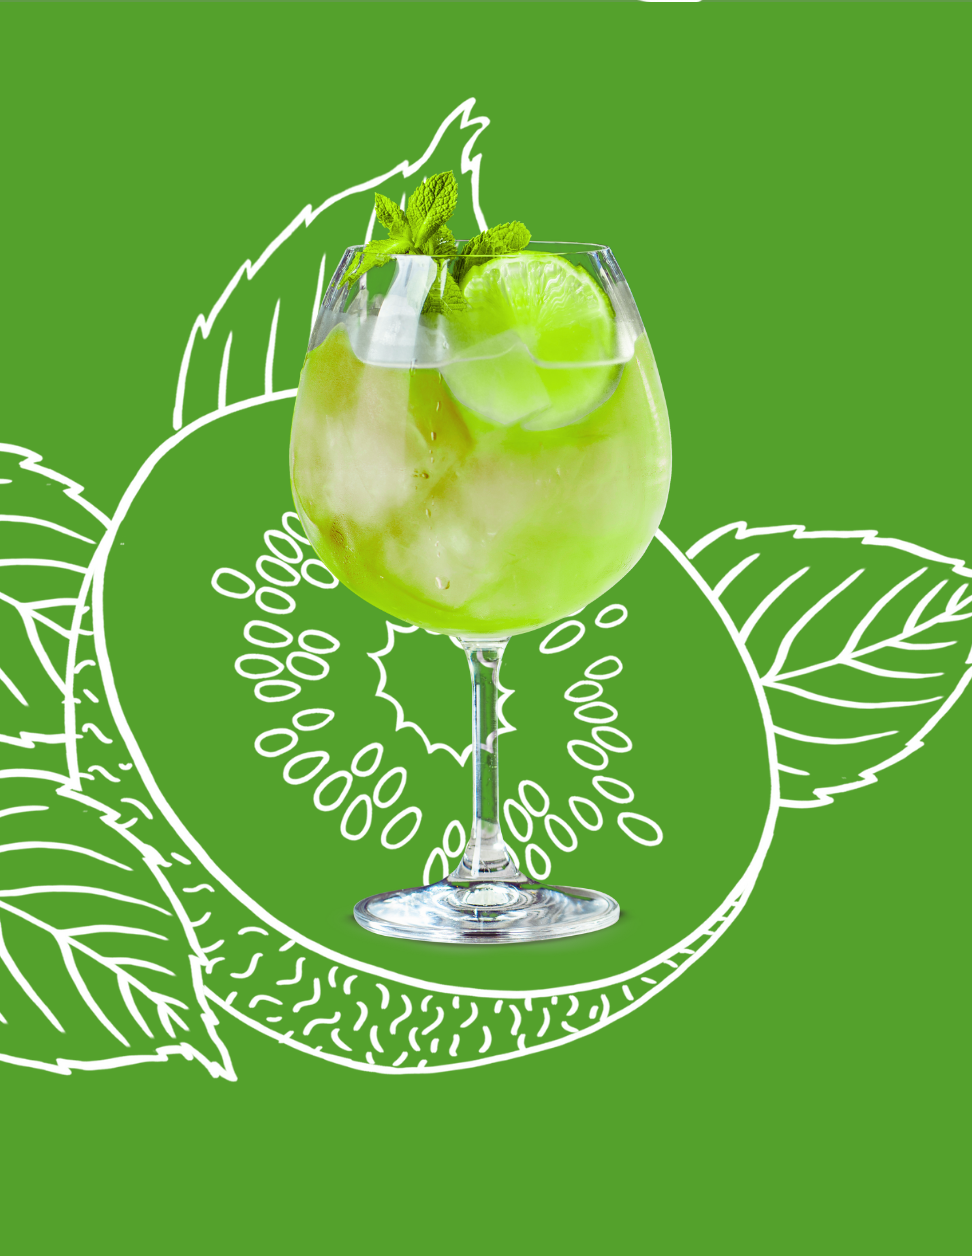 Kiwi Spritz Cocktail Recipe with Bols Kiwi Products